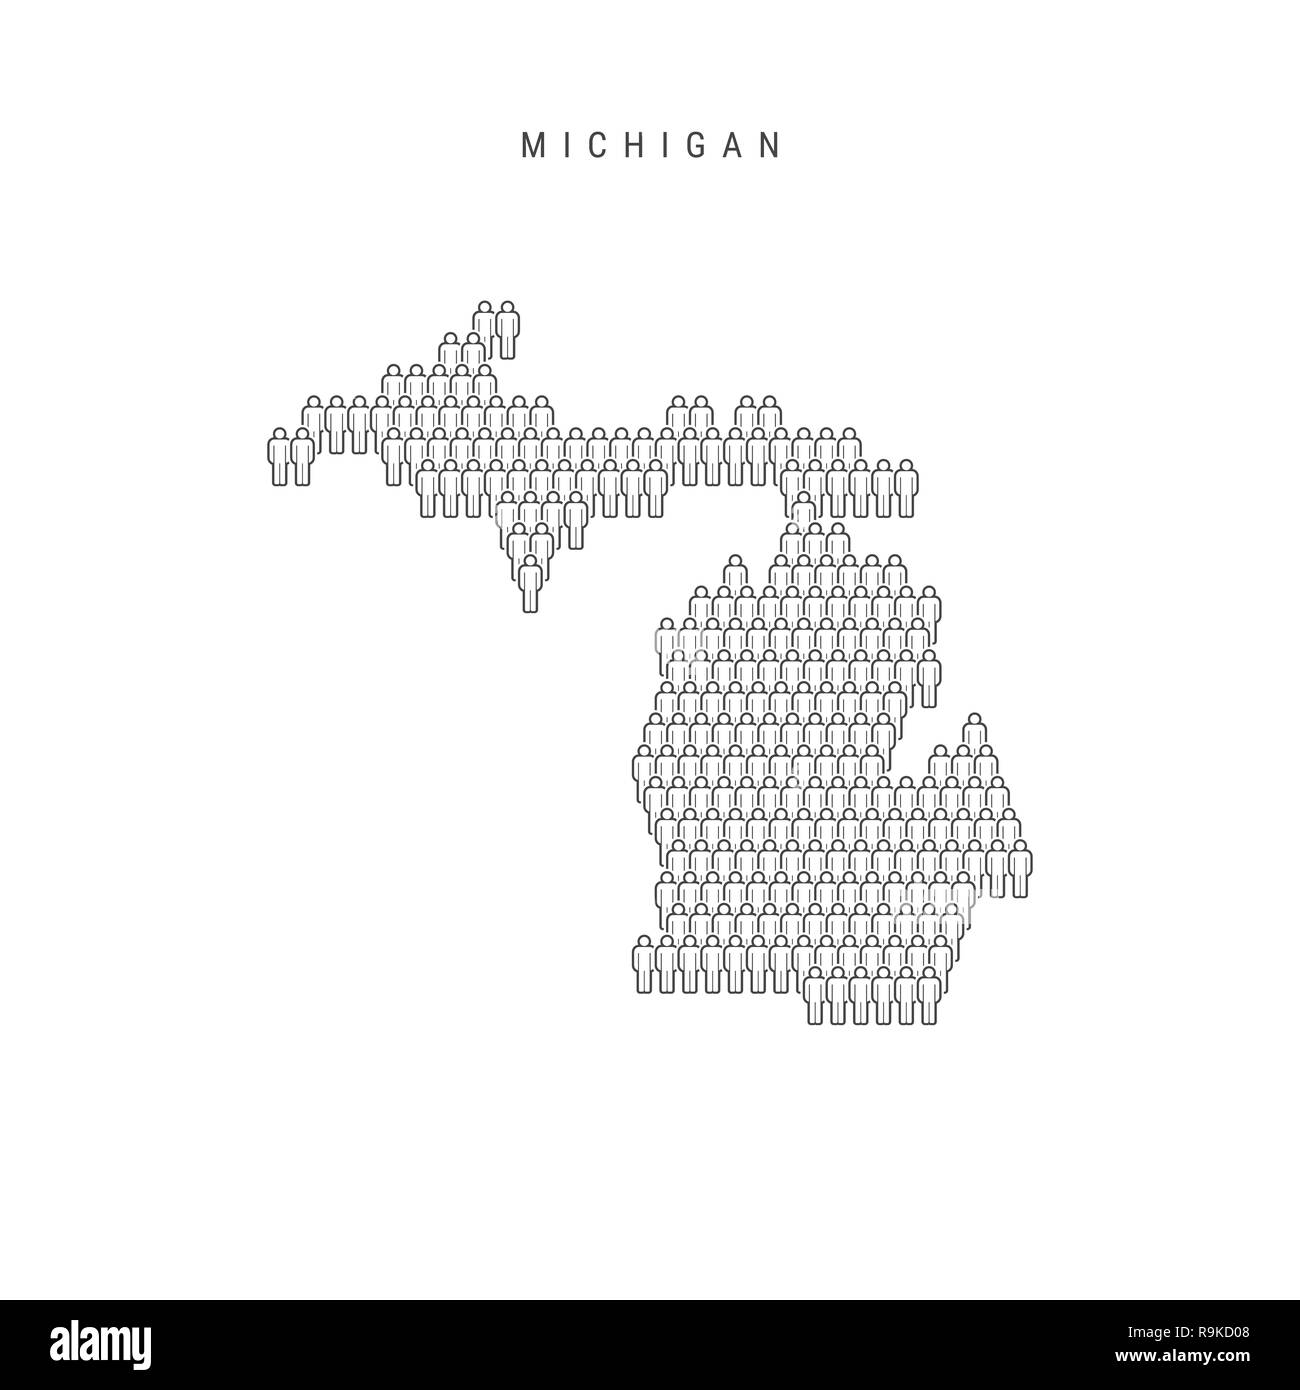 Leute Karte von Michigan, US-Staat. Stilisierte Silhouette, Leute in der Form einer Karte von Michigan. Michigan Bevölkerung. Abbildung isoliert auf W Stockfoto